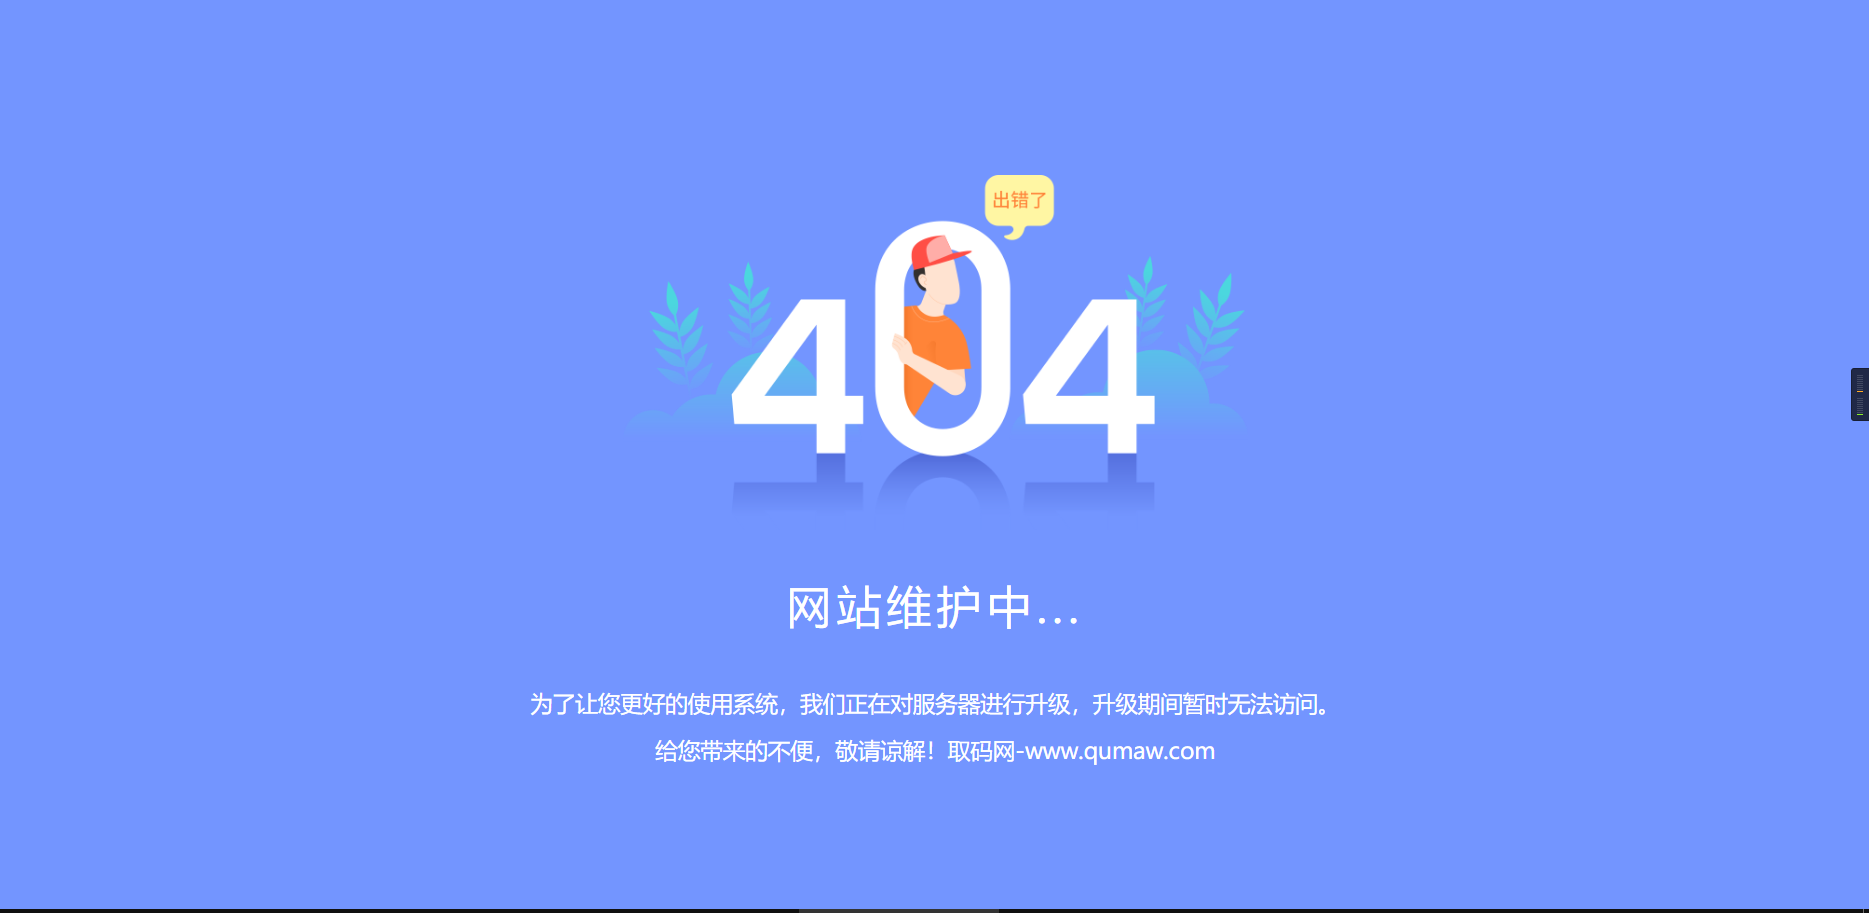 一款好看的404维护升级页面插图1